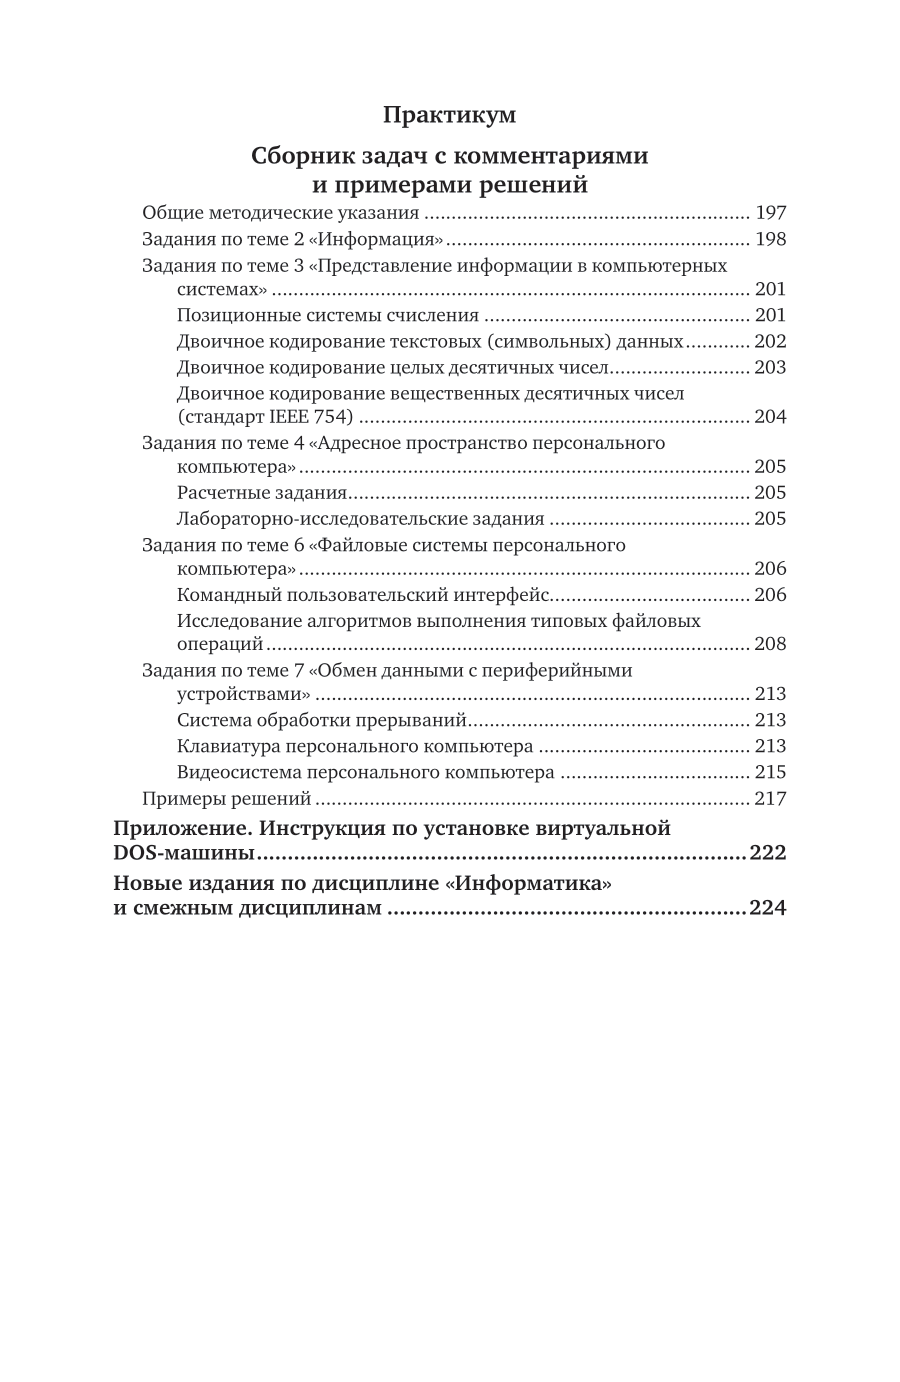 Информатика 2-е изд., пер. и доп. Учебное пособие для вузов - фото №6